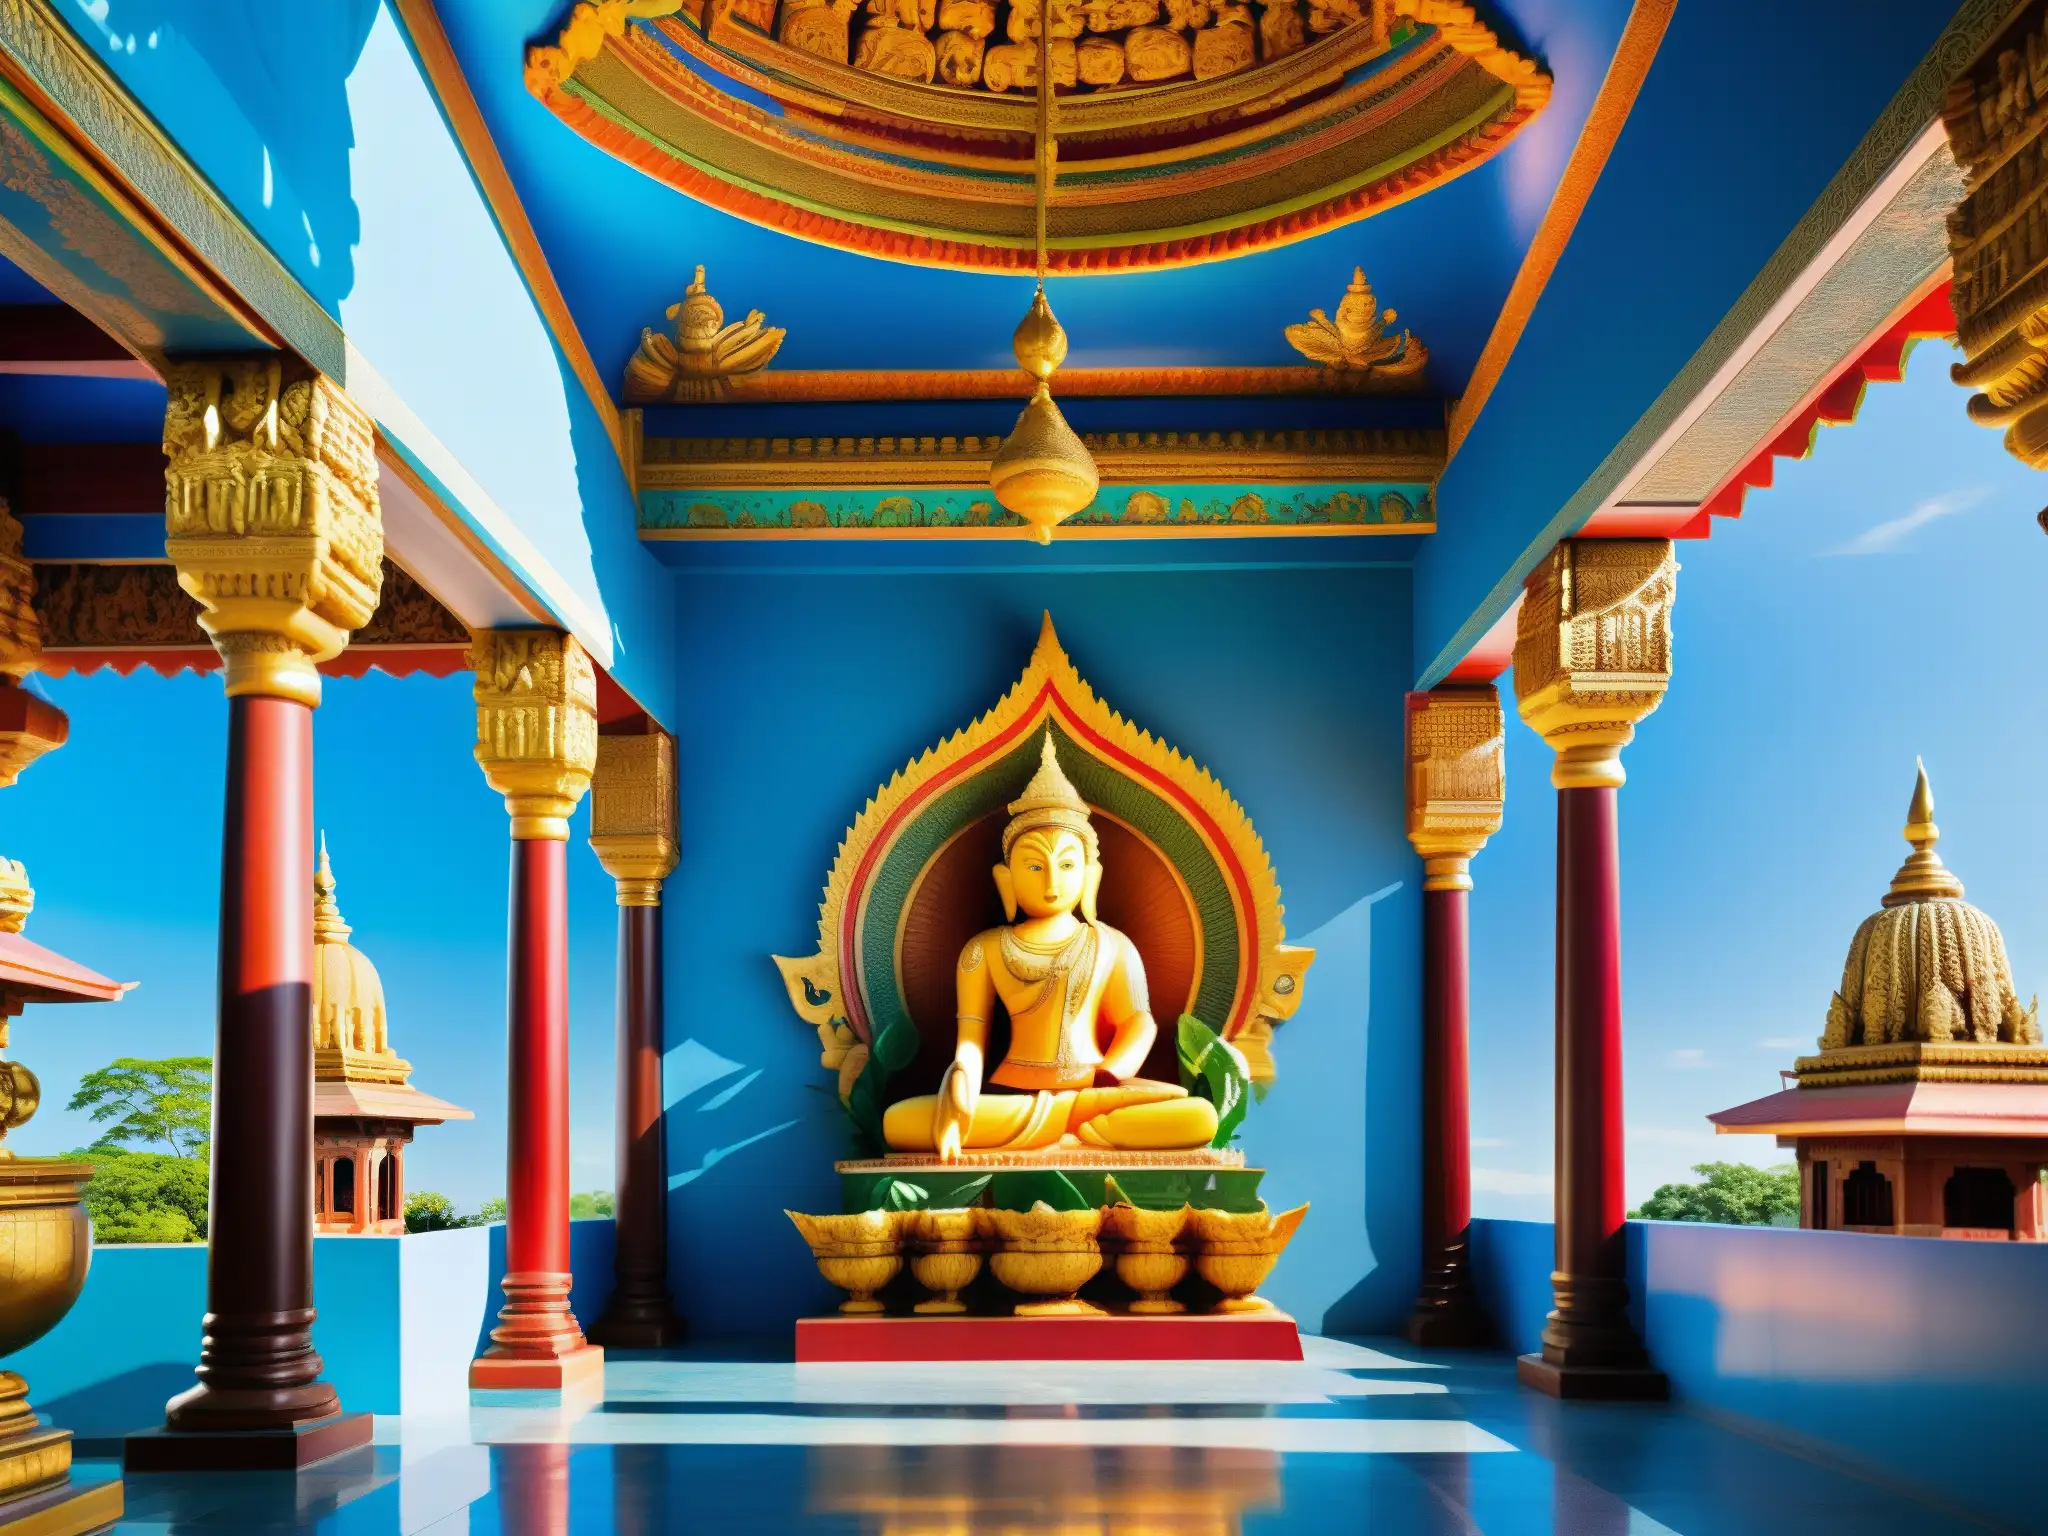 Un templo hindú vibrante con estatuas coloridas de deidades, rituales y una atmósfera espiritual